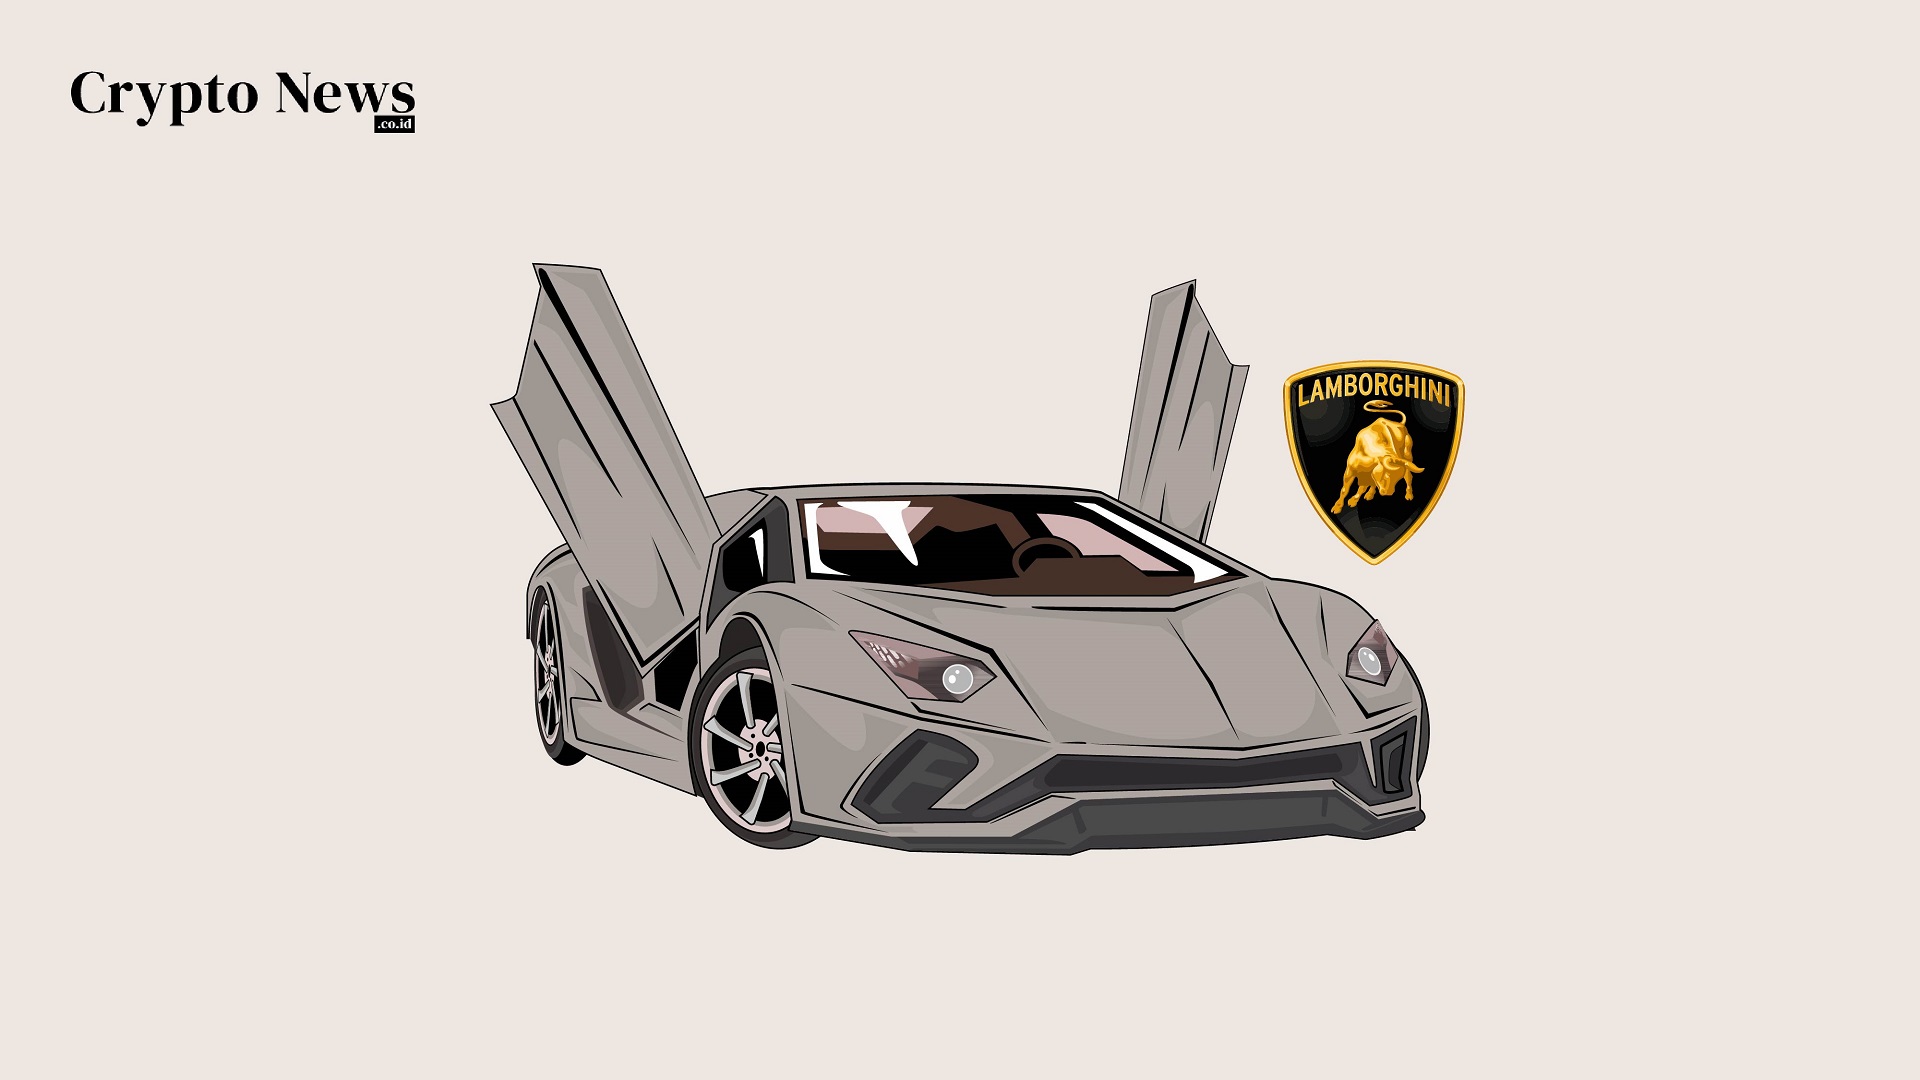 Illust : Kreator Menjual Video Serpihan Ledakan Lamborghini Huracan sebagai NFT